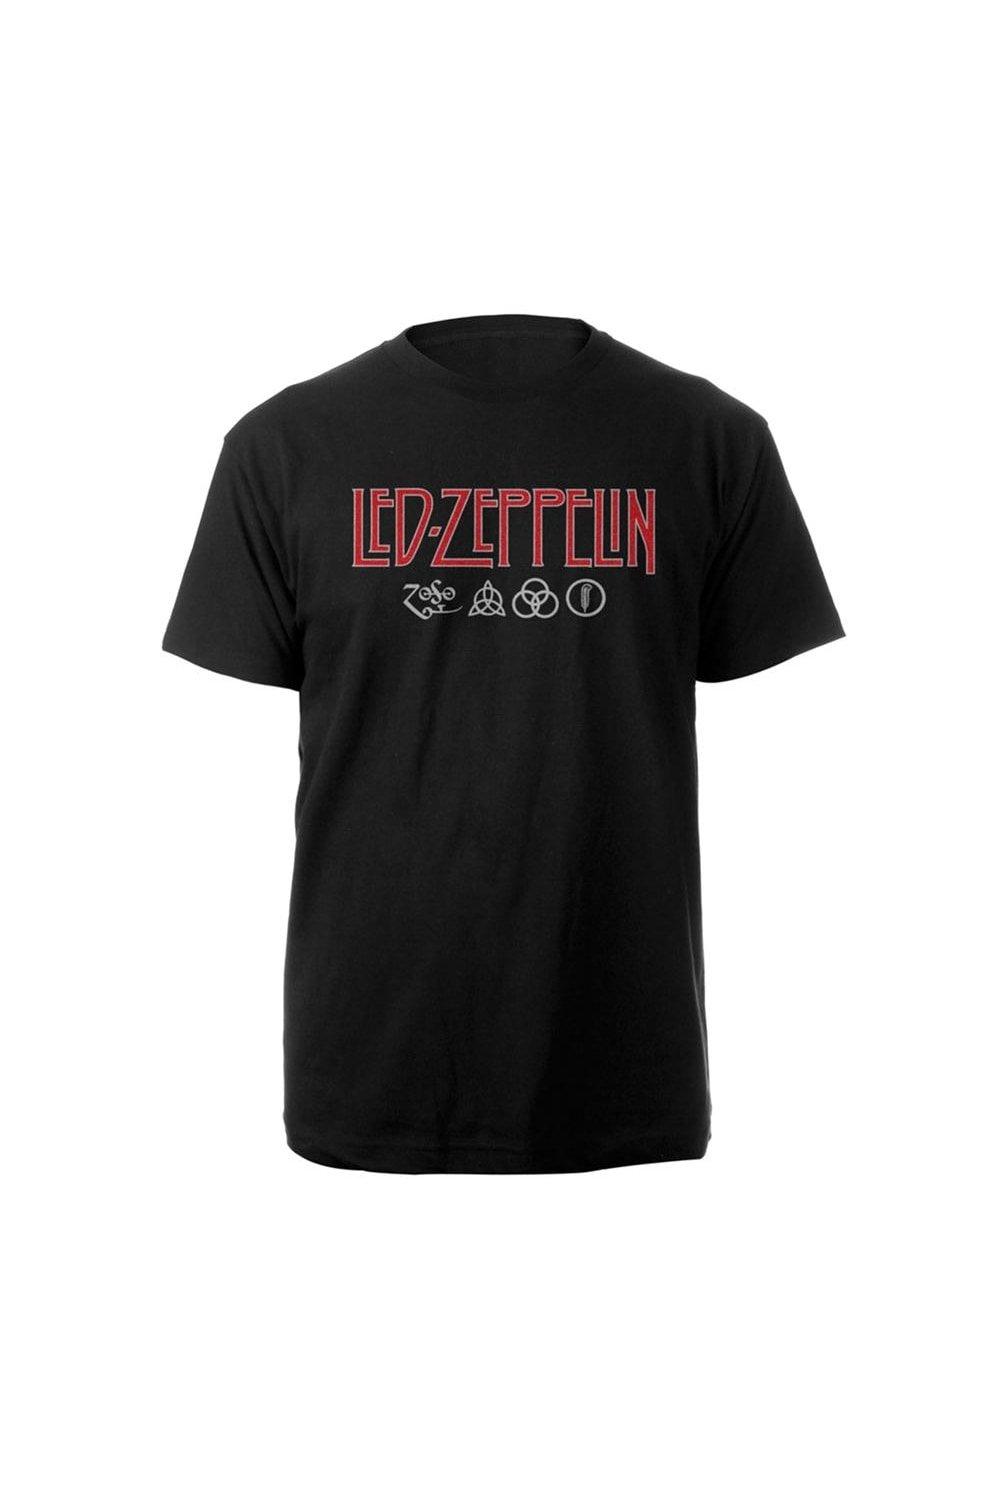 футболка с логотипом Led Zeppelin, черный японская футболка с длинным рукавом icarus led zeppelin черный